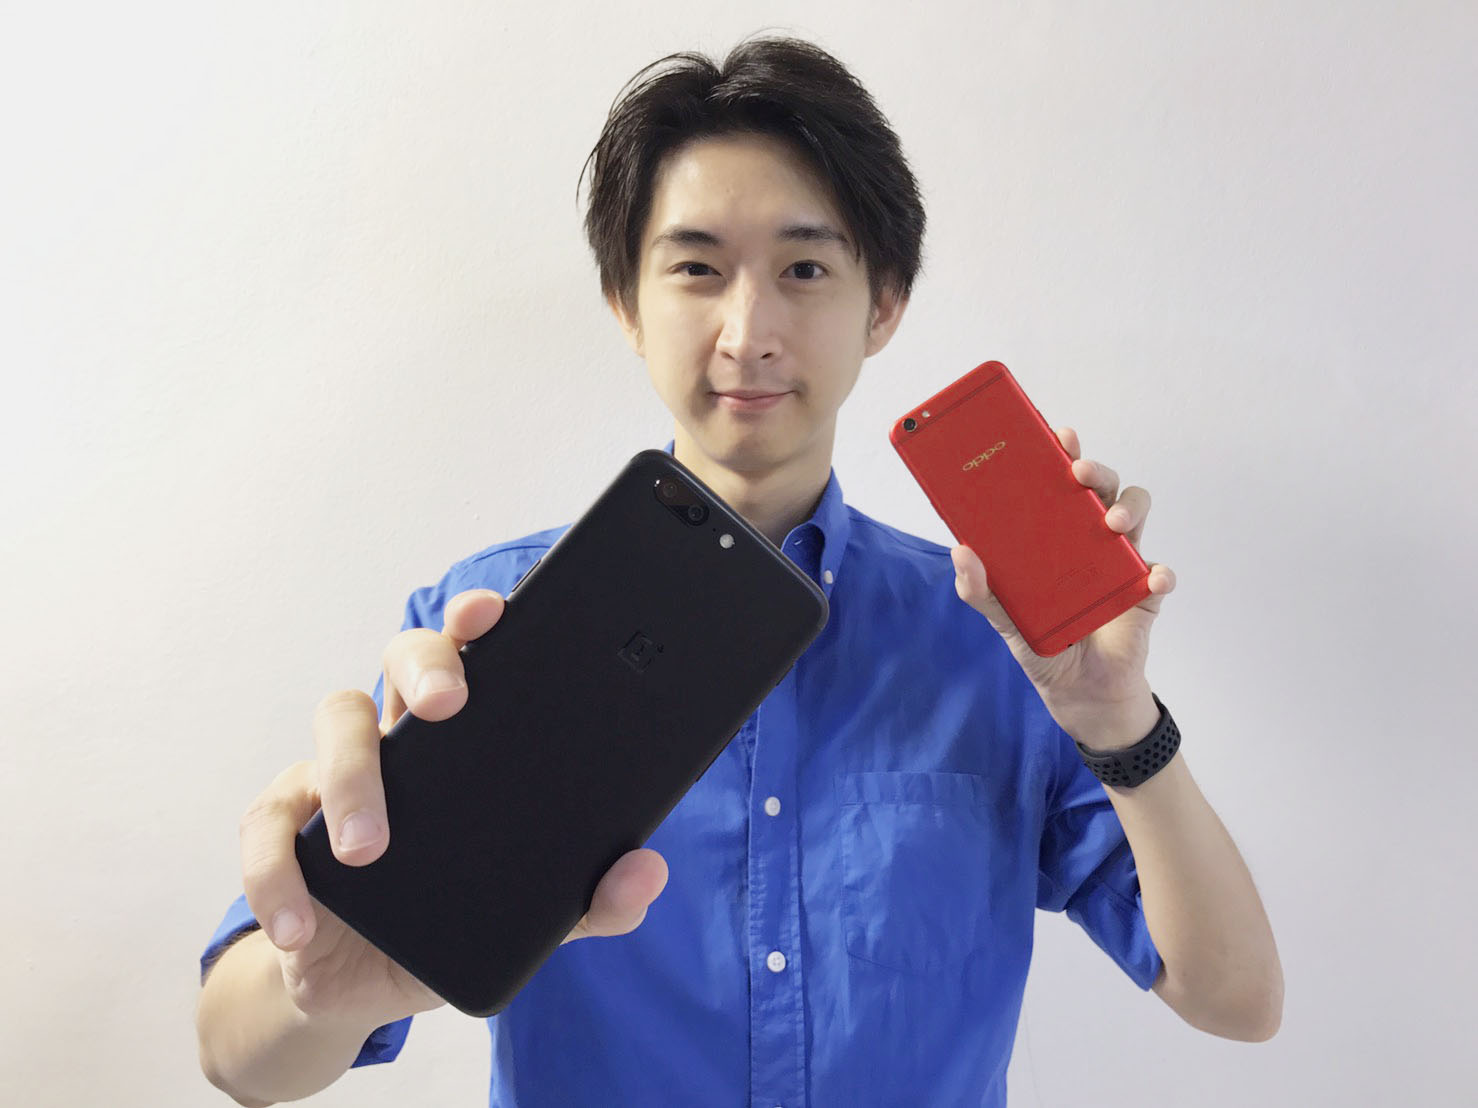 รีวิว OnePlus 5 สมาร์ทโฟนฆ่าเรือธงรุ่นล่าสุด พร้อมแกะกล่อง OPPO R9s สีแดง